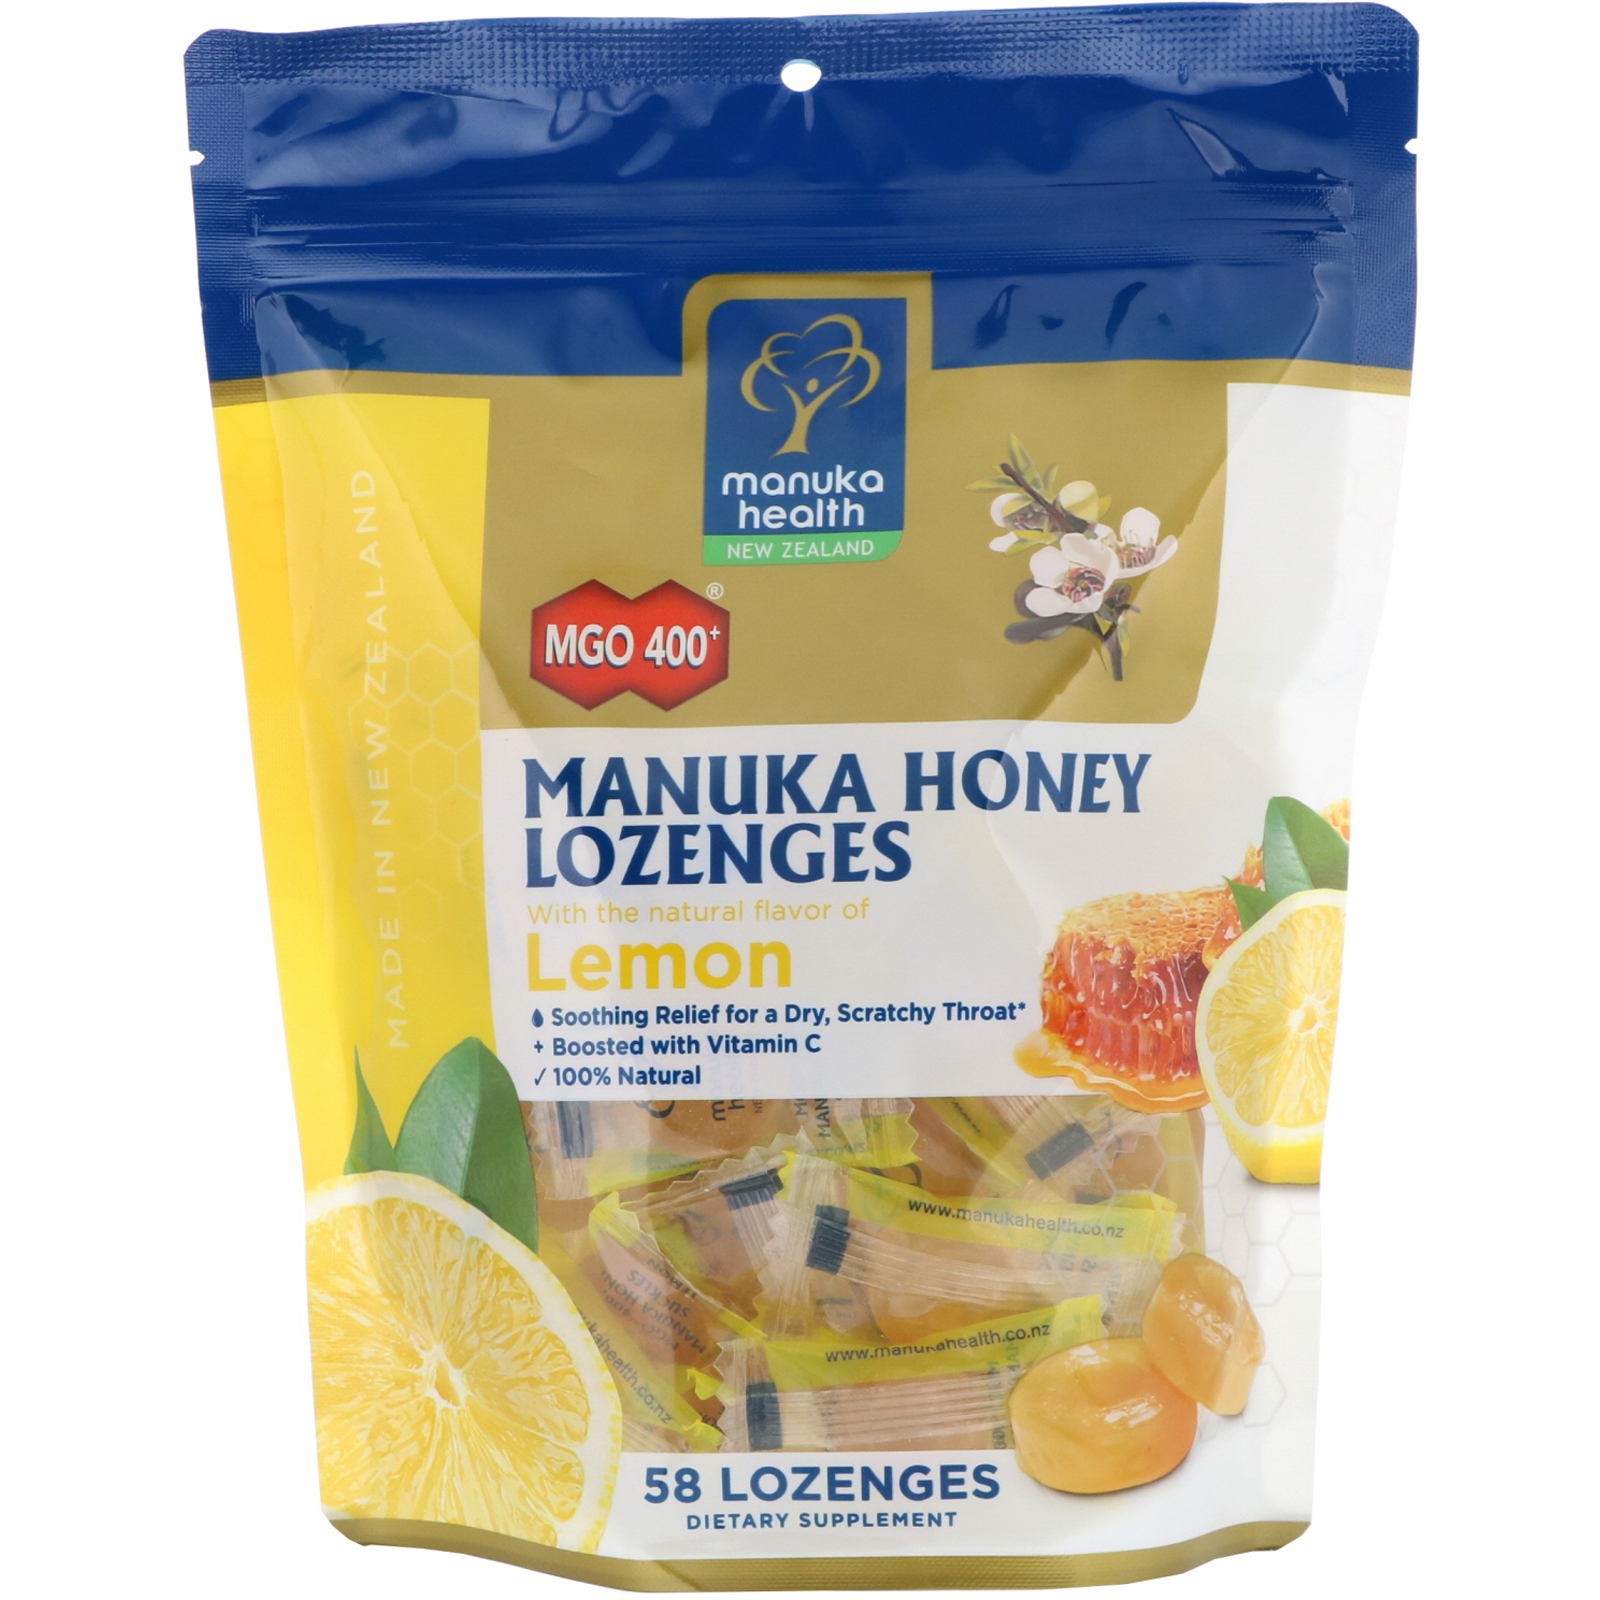 manuka health, manuka honey lozenges, lemon, mgo 400 , 58